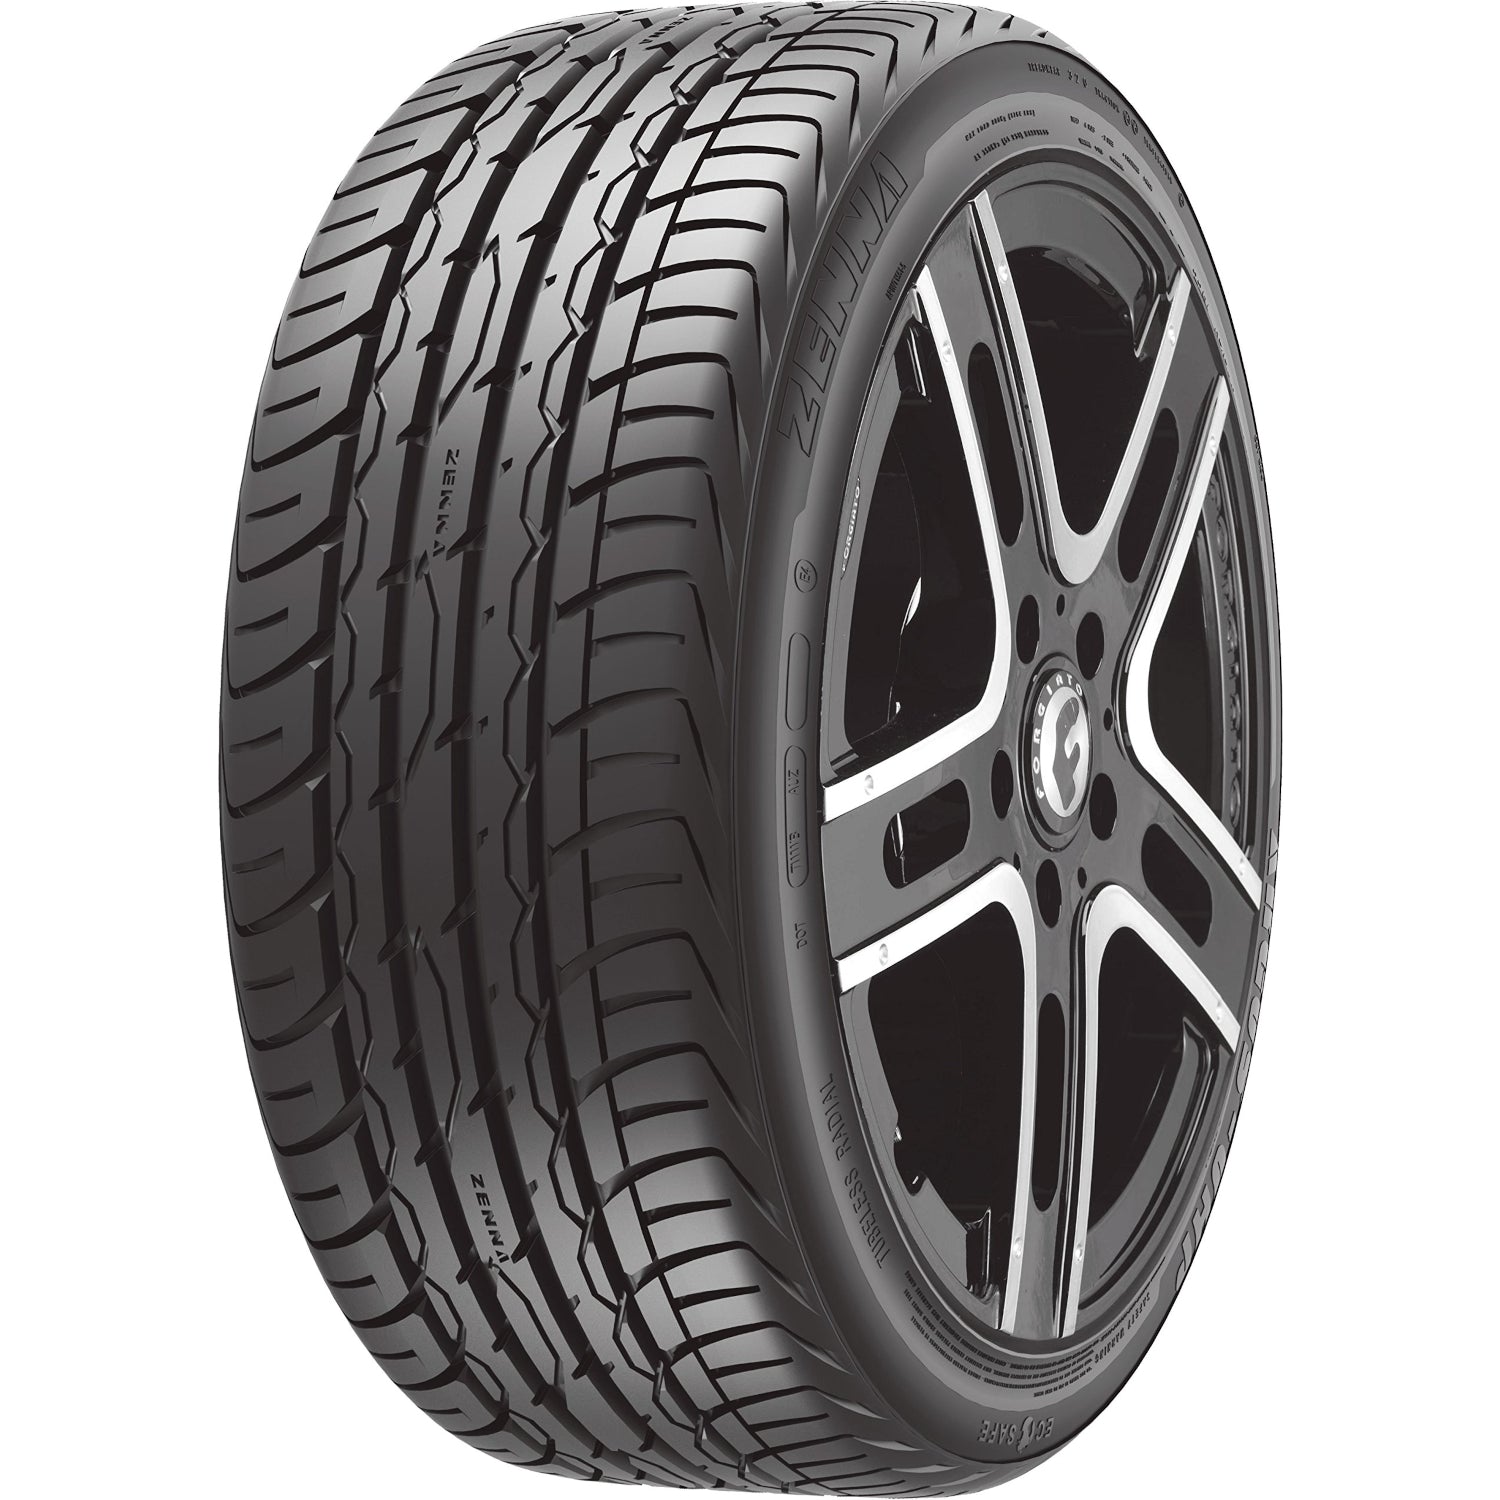 Zenna Argus UHP 255/30ZR24 (30.1x10R 24) Tires